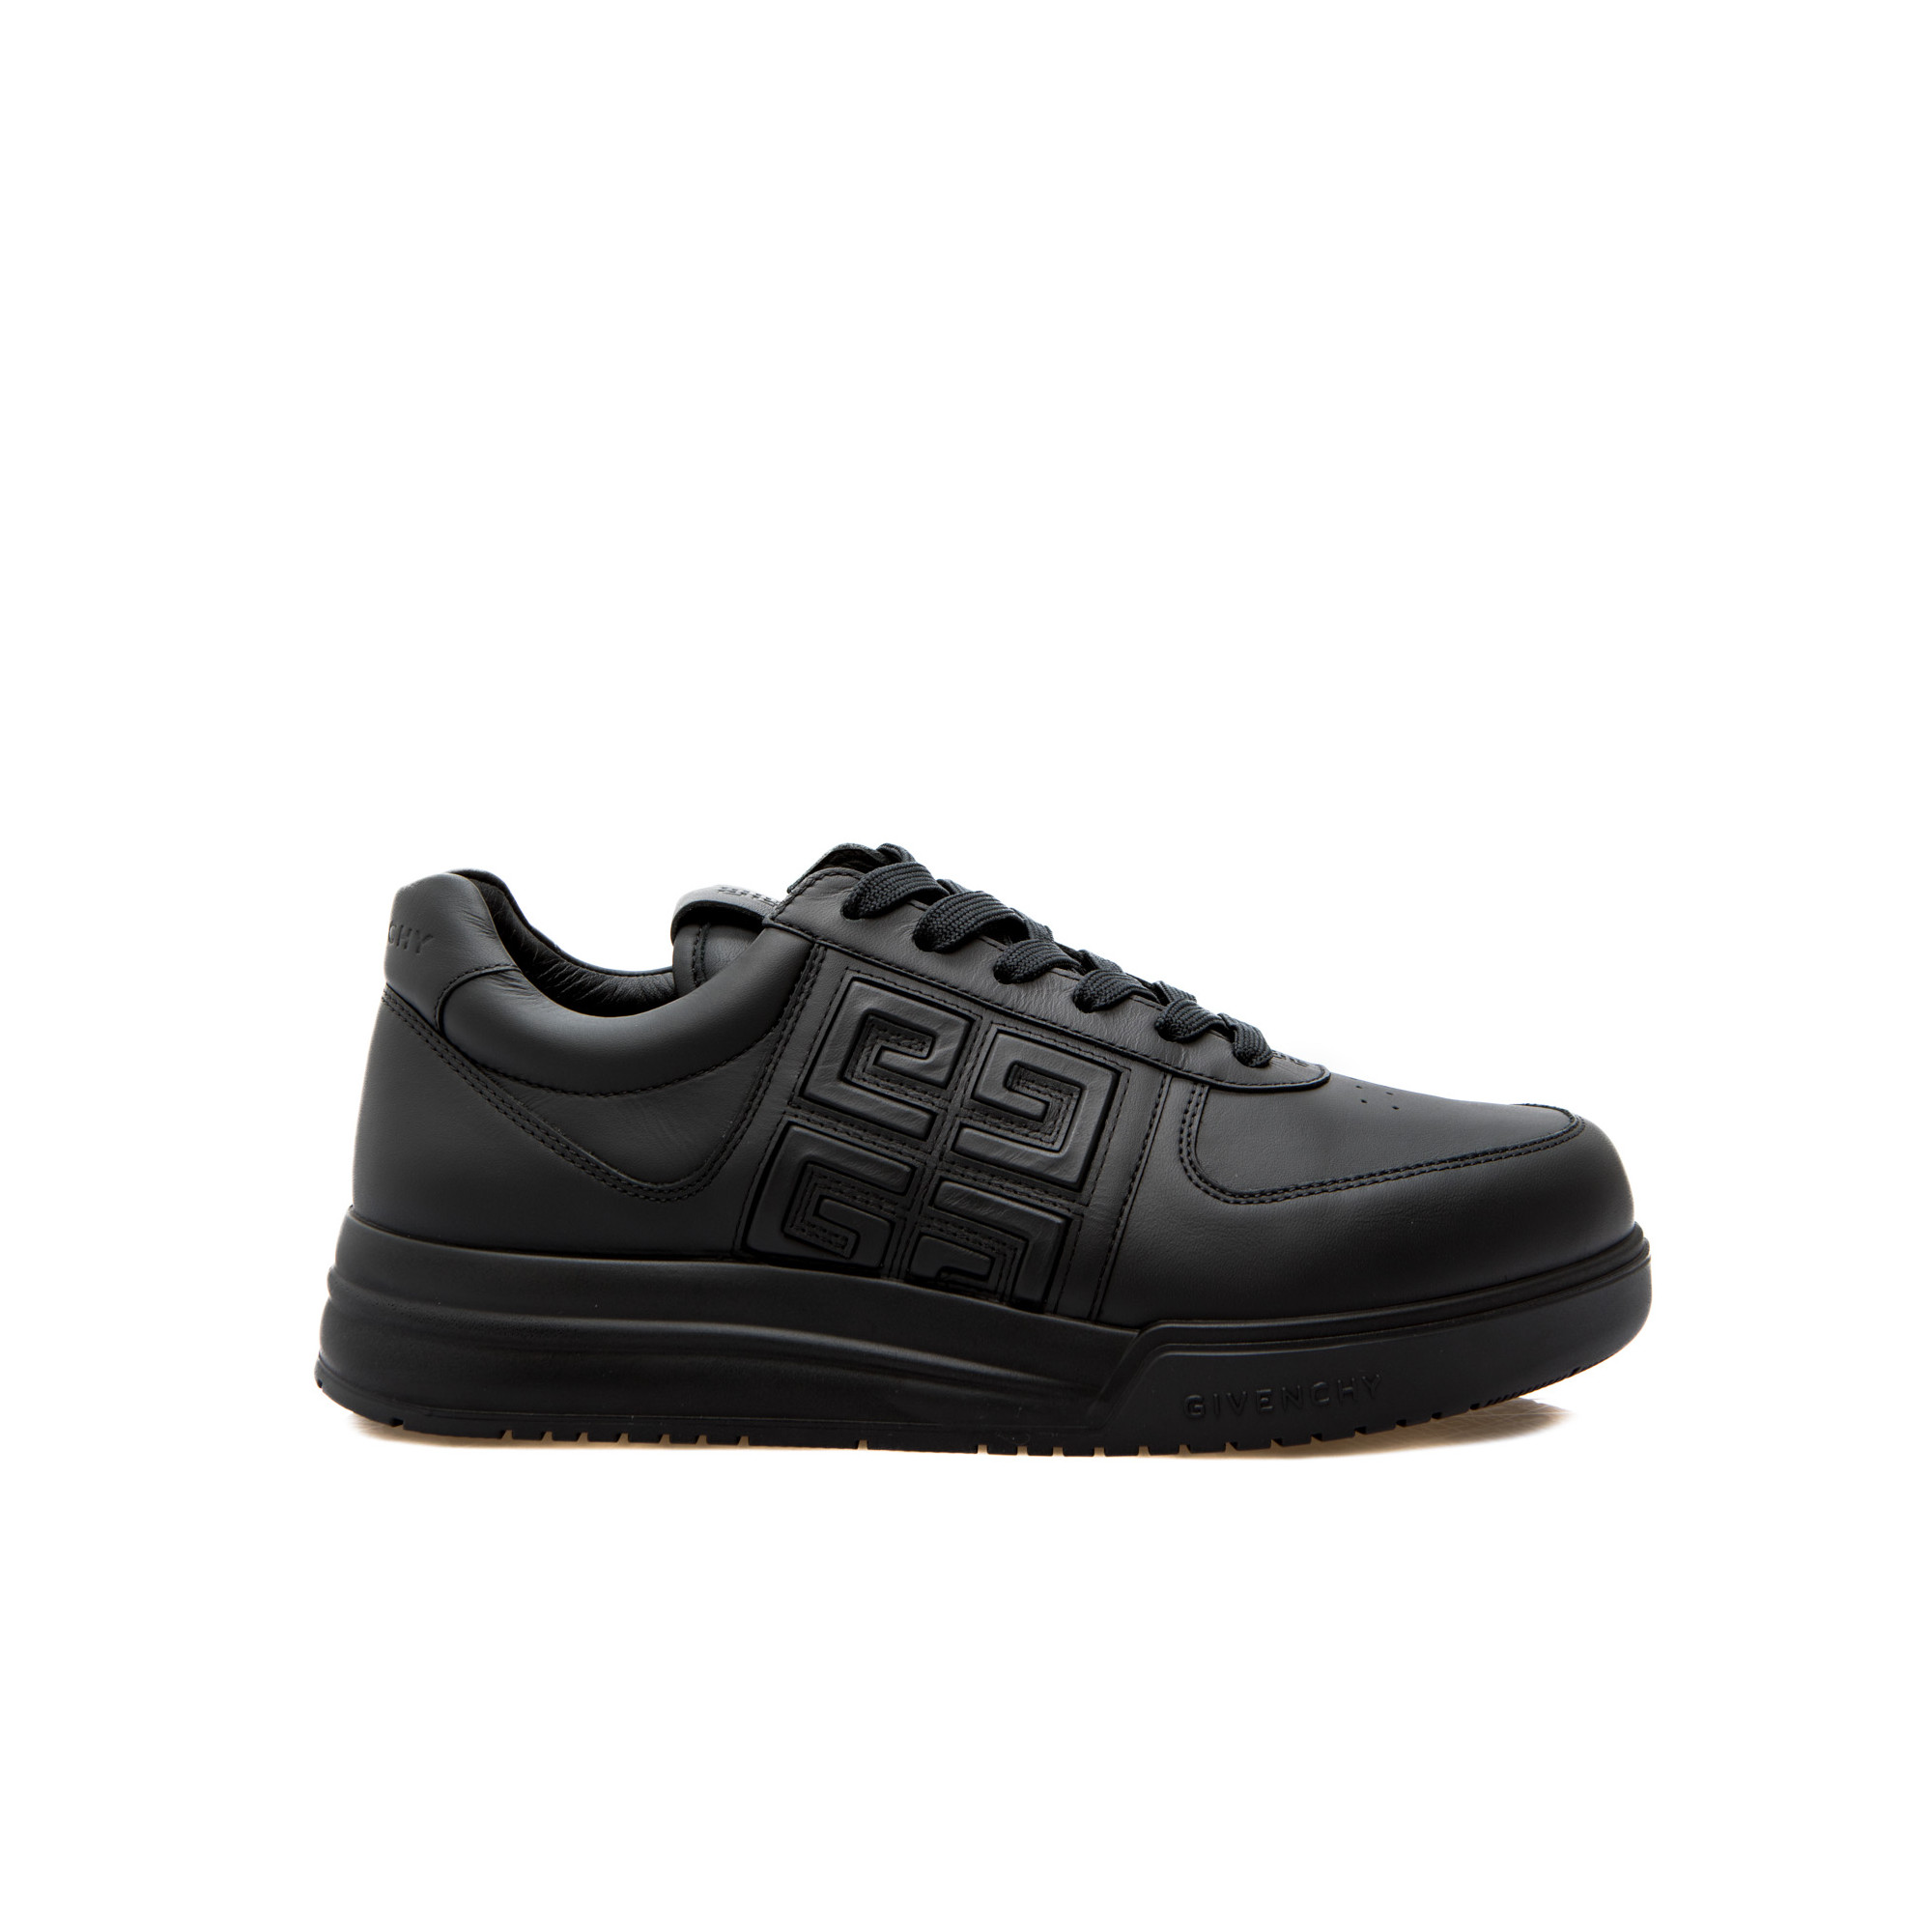 Alert Additief Trek Givenchy G4 Low Sneakers Zwart | Derodeloper.com